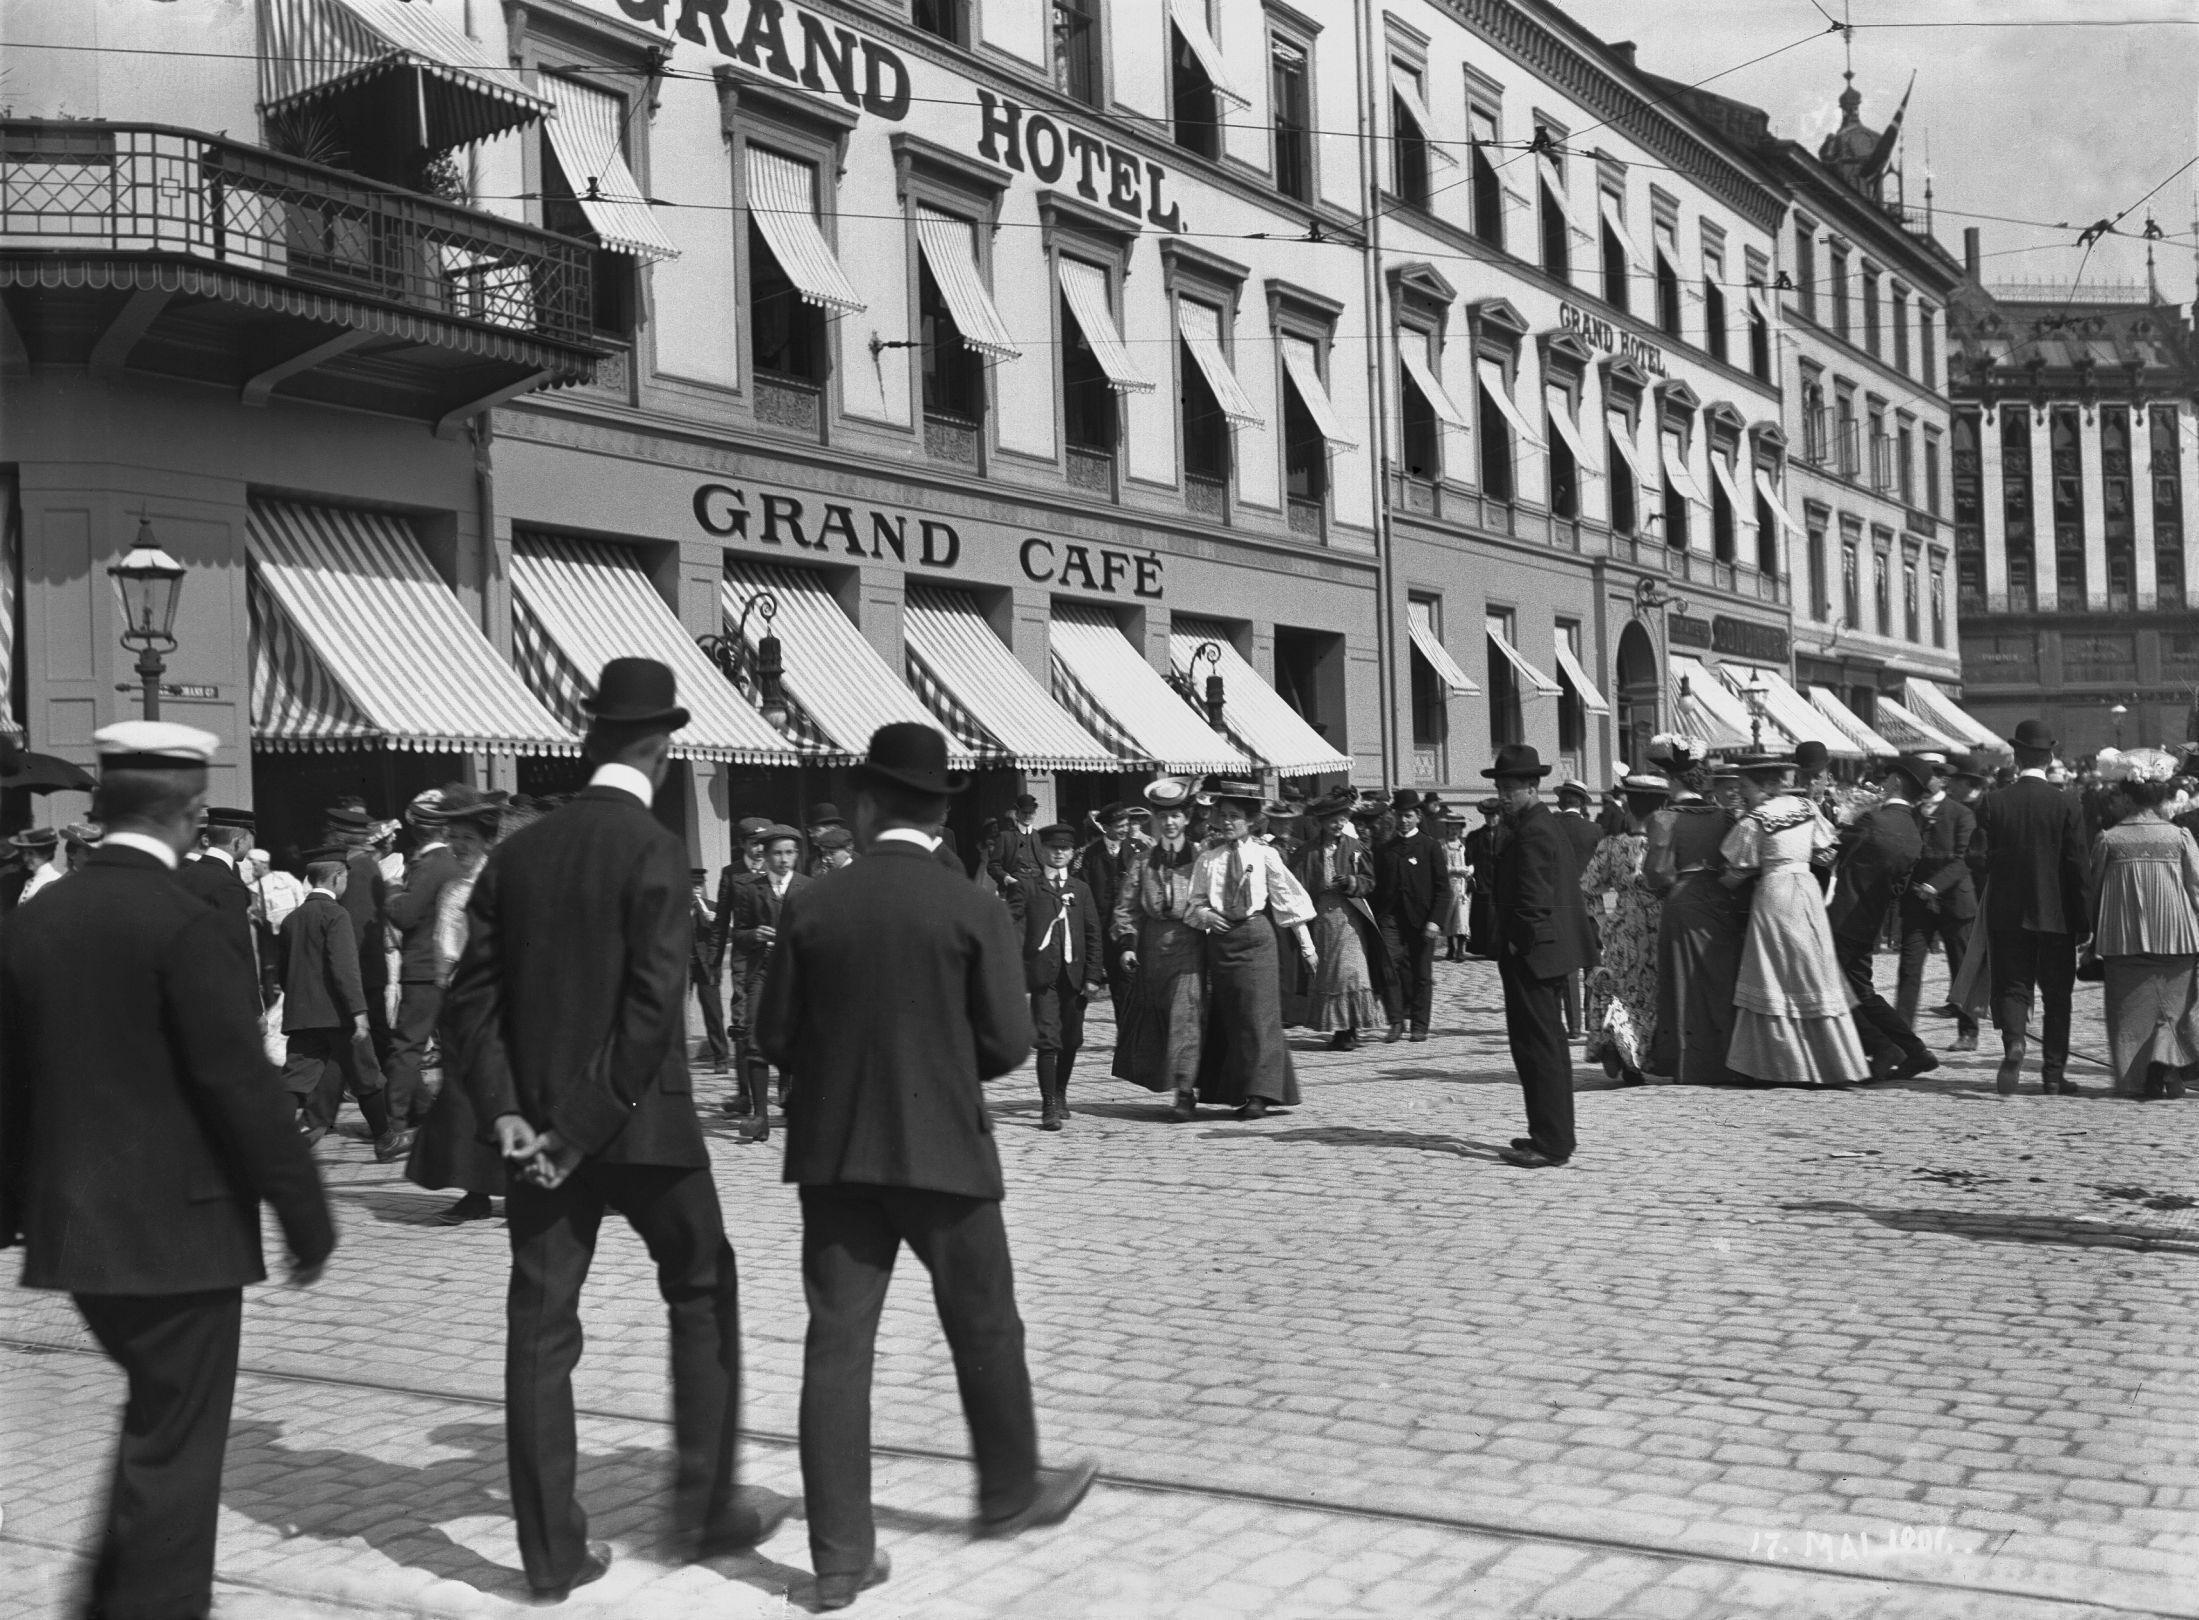 NASJONALDAGEN: 17. mai-feiring i Karl Johans gater utenfor Grand var også populært i 1906. Foto: Ukjent fotograf/Oslo Museum